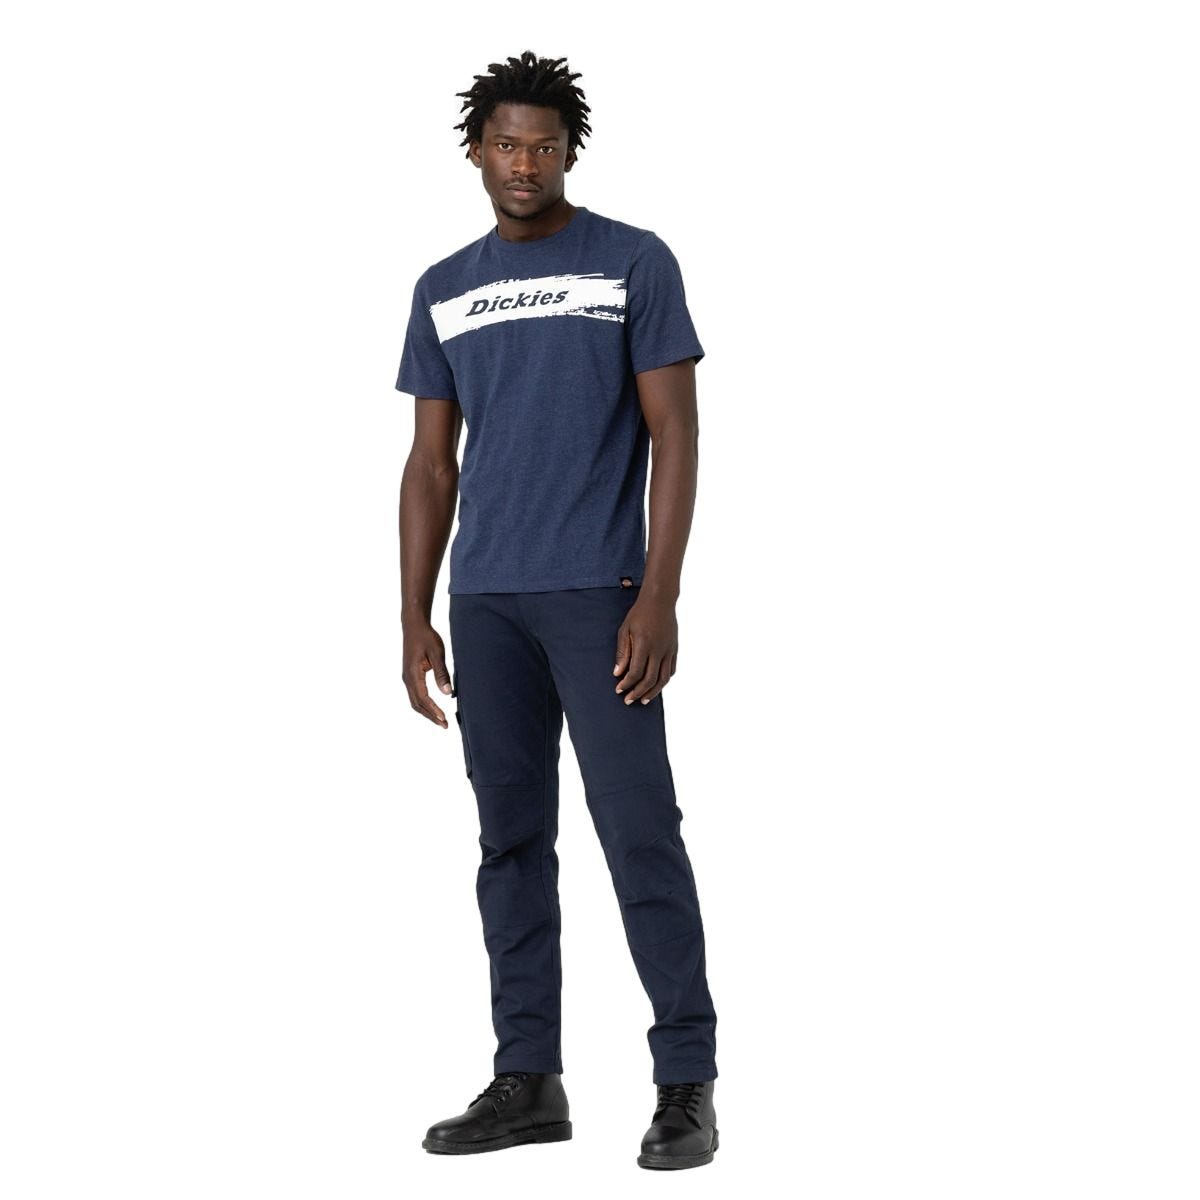 T-shirt à manches courtes pour homme Stanton bleu marine - Dickies - Taille XL 2